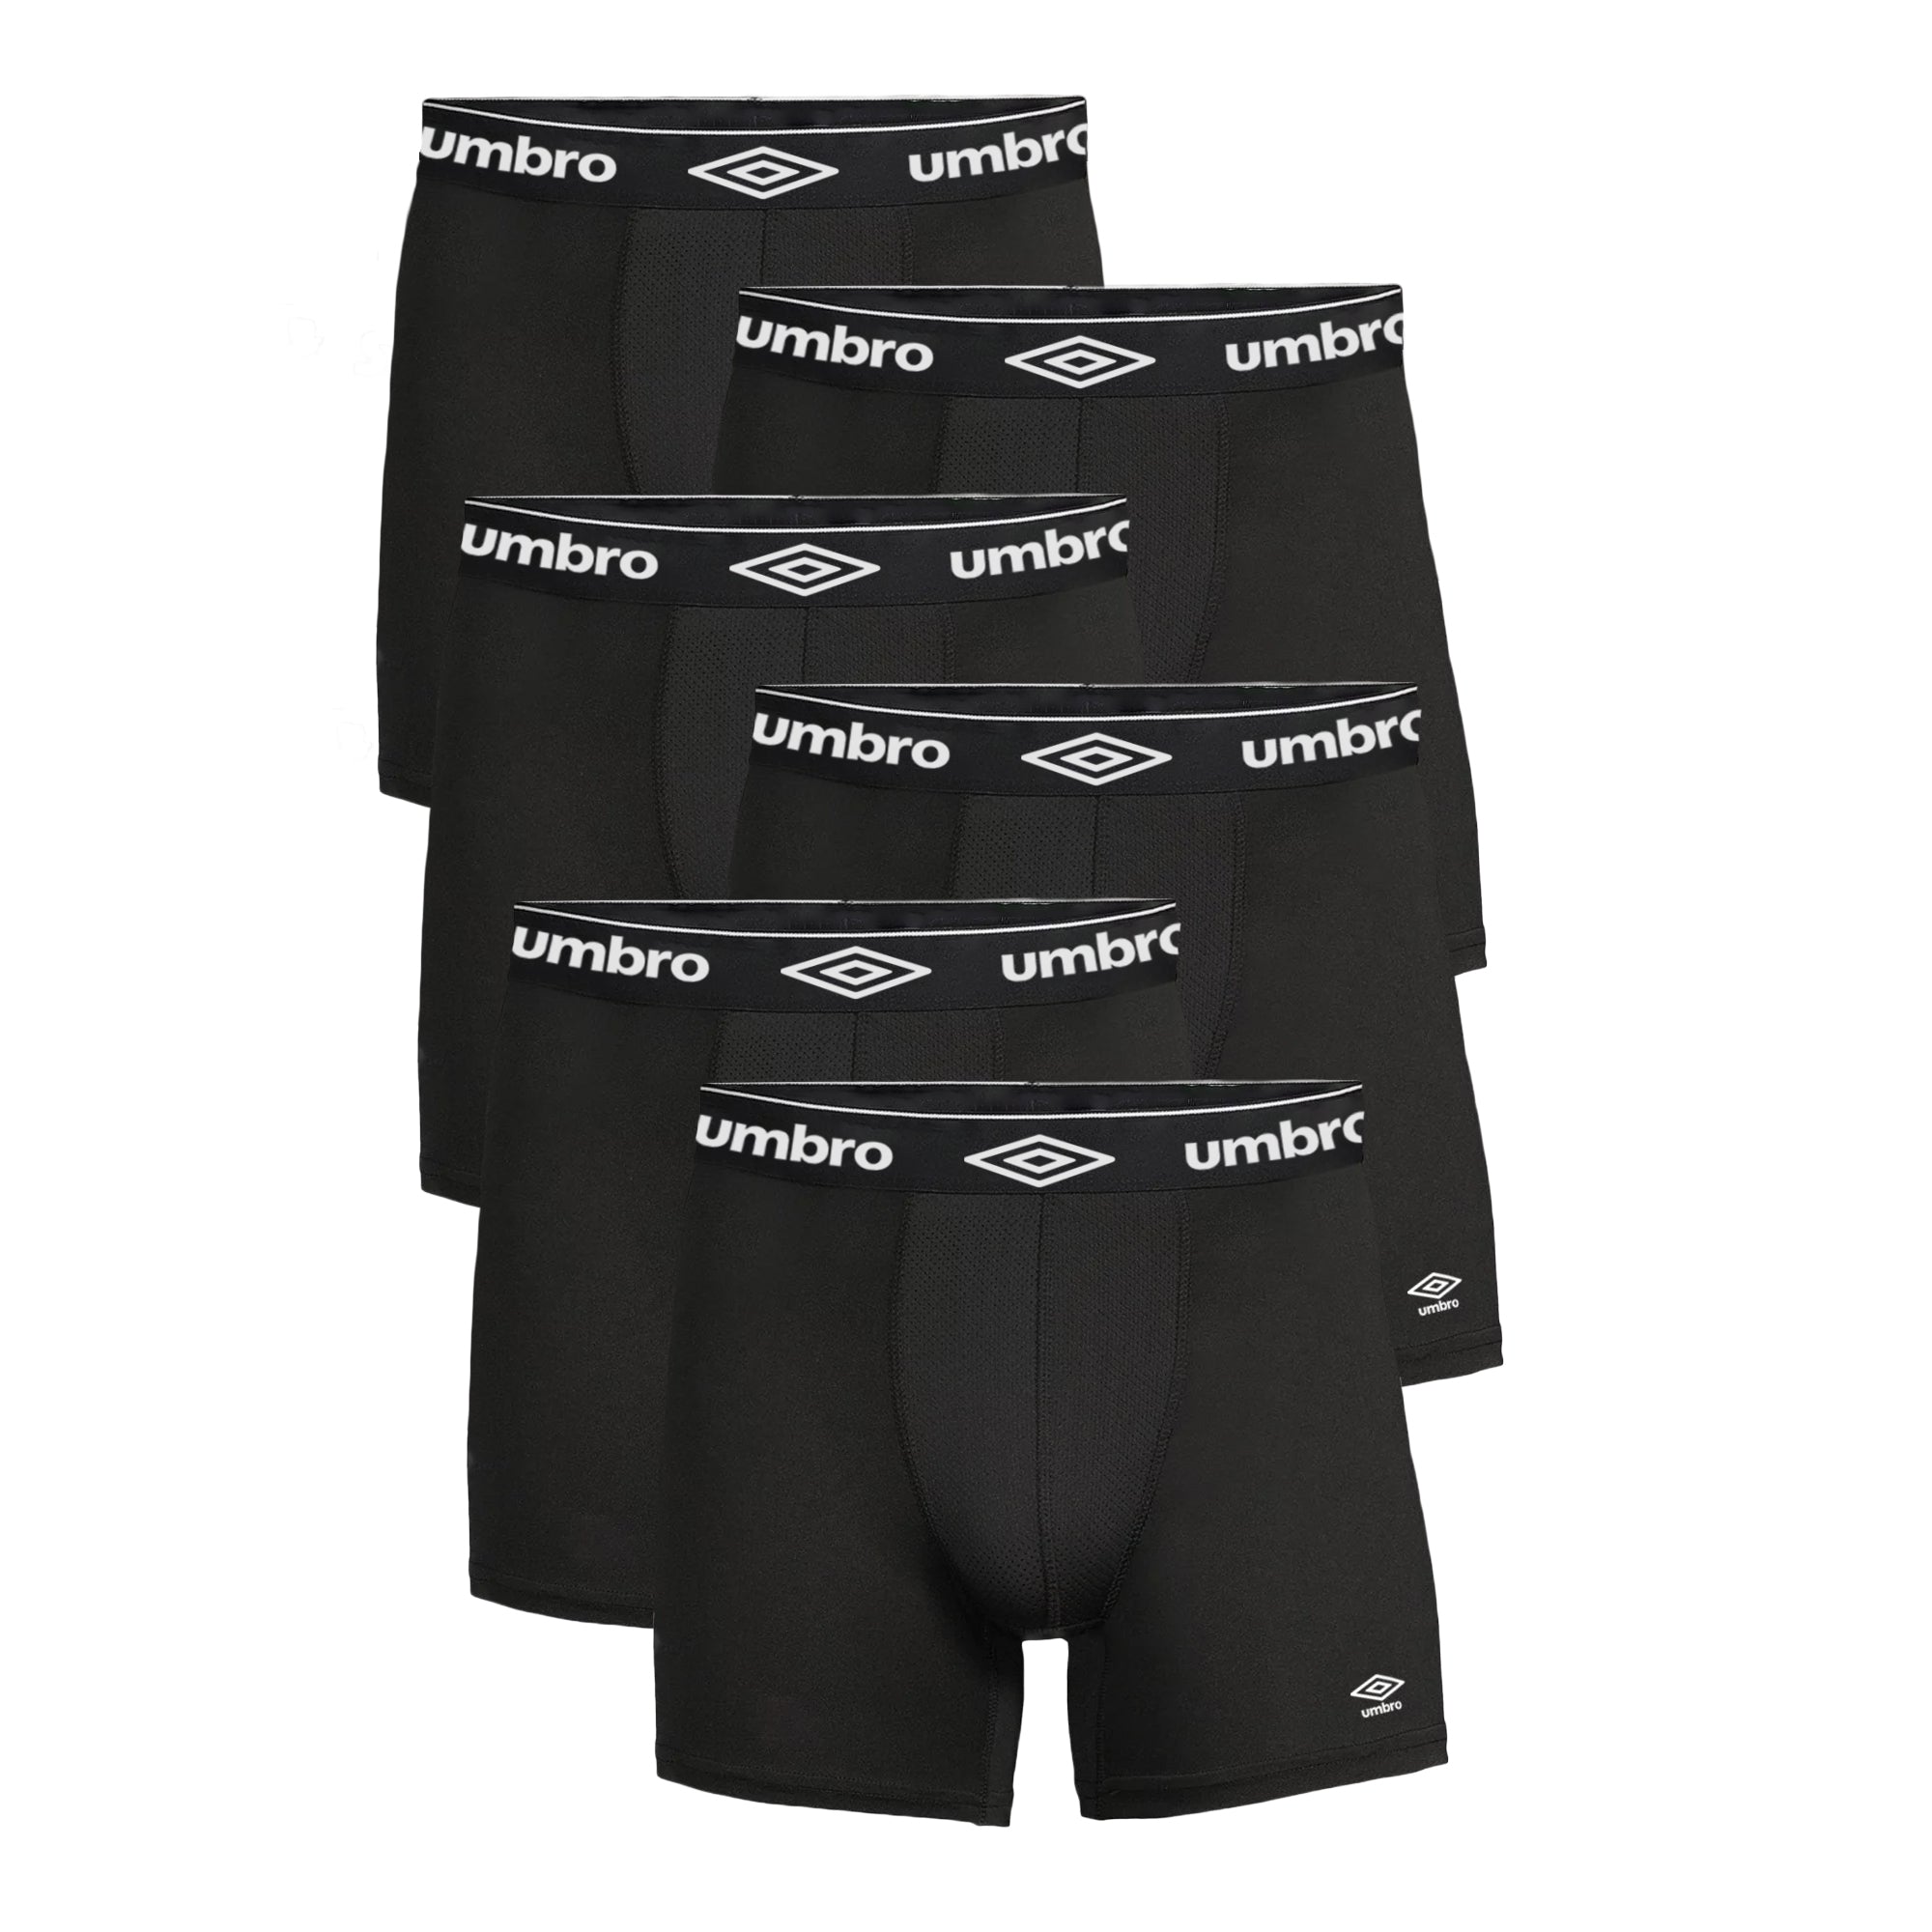 Men's Boxer Briefs Pack, Anti-Chafing, Moisture-Wicking Underwear